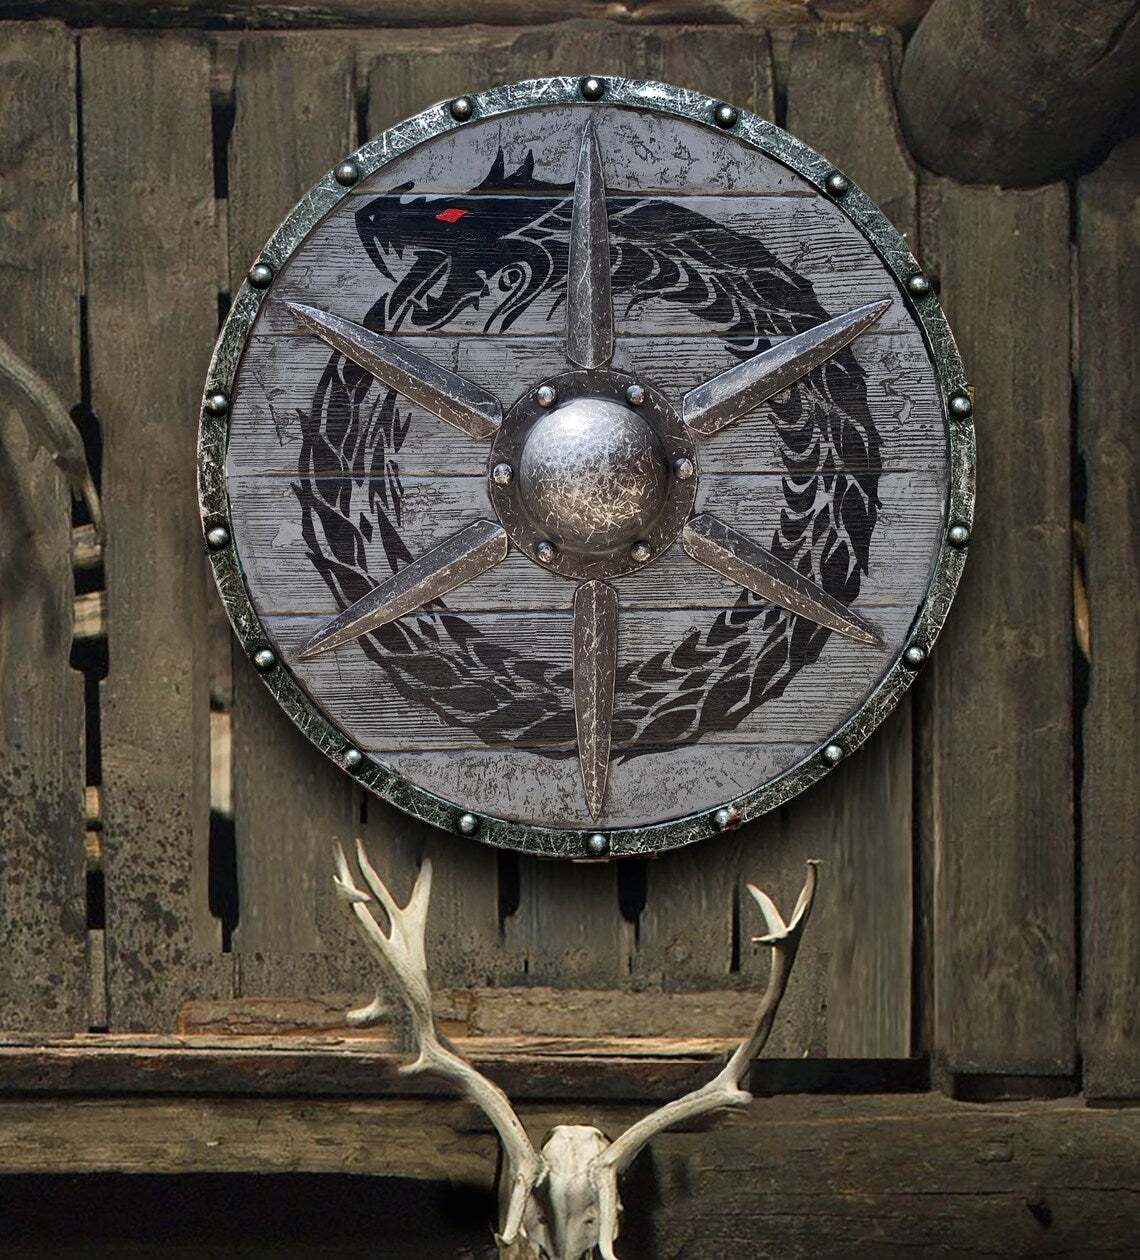 Eivor valhalla raven authentic battleworn viking shield——BUY 3 FREE SHIIPING